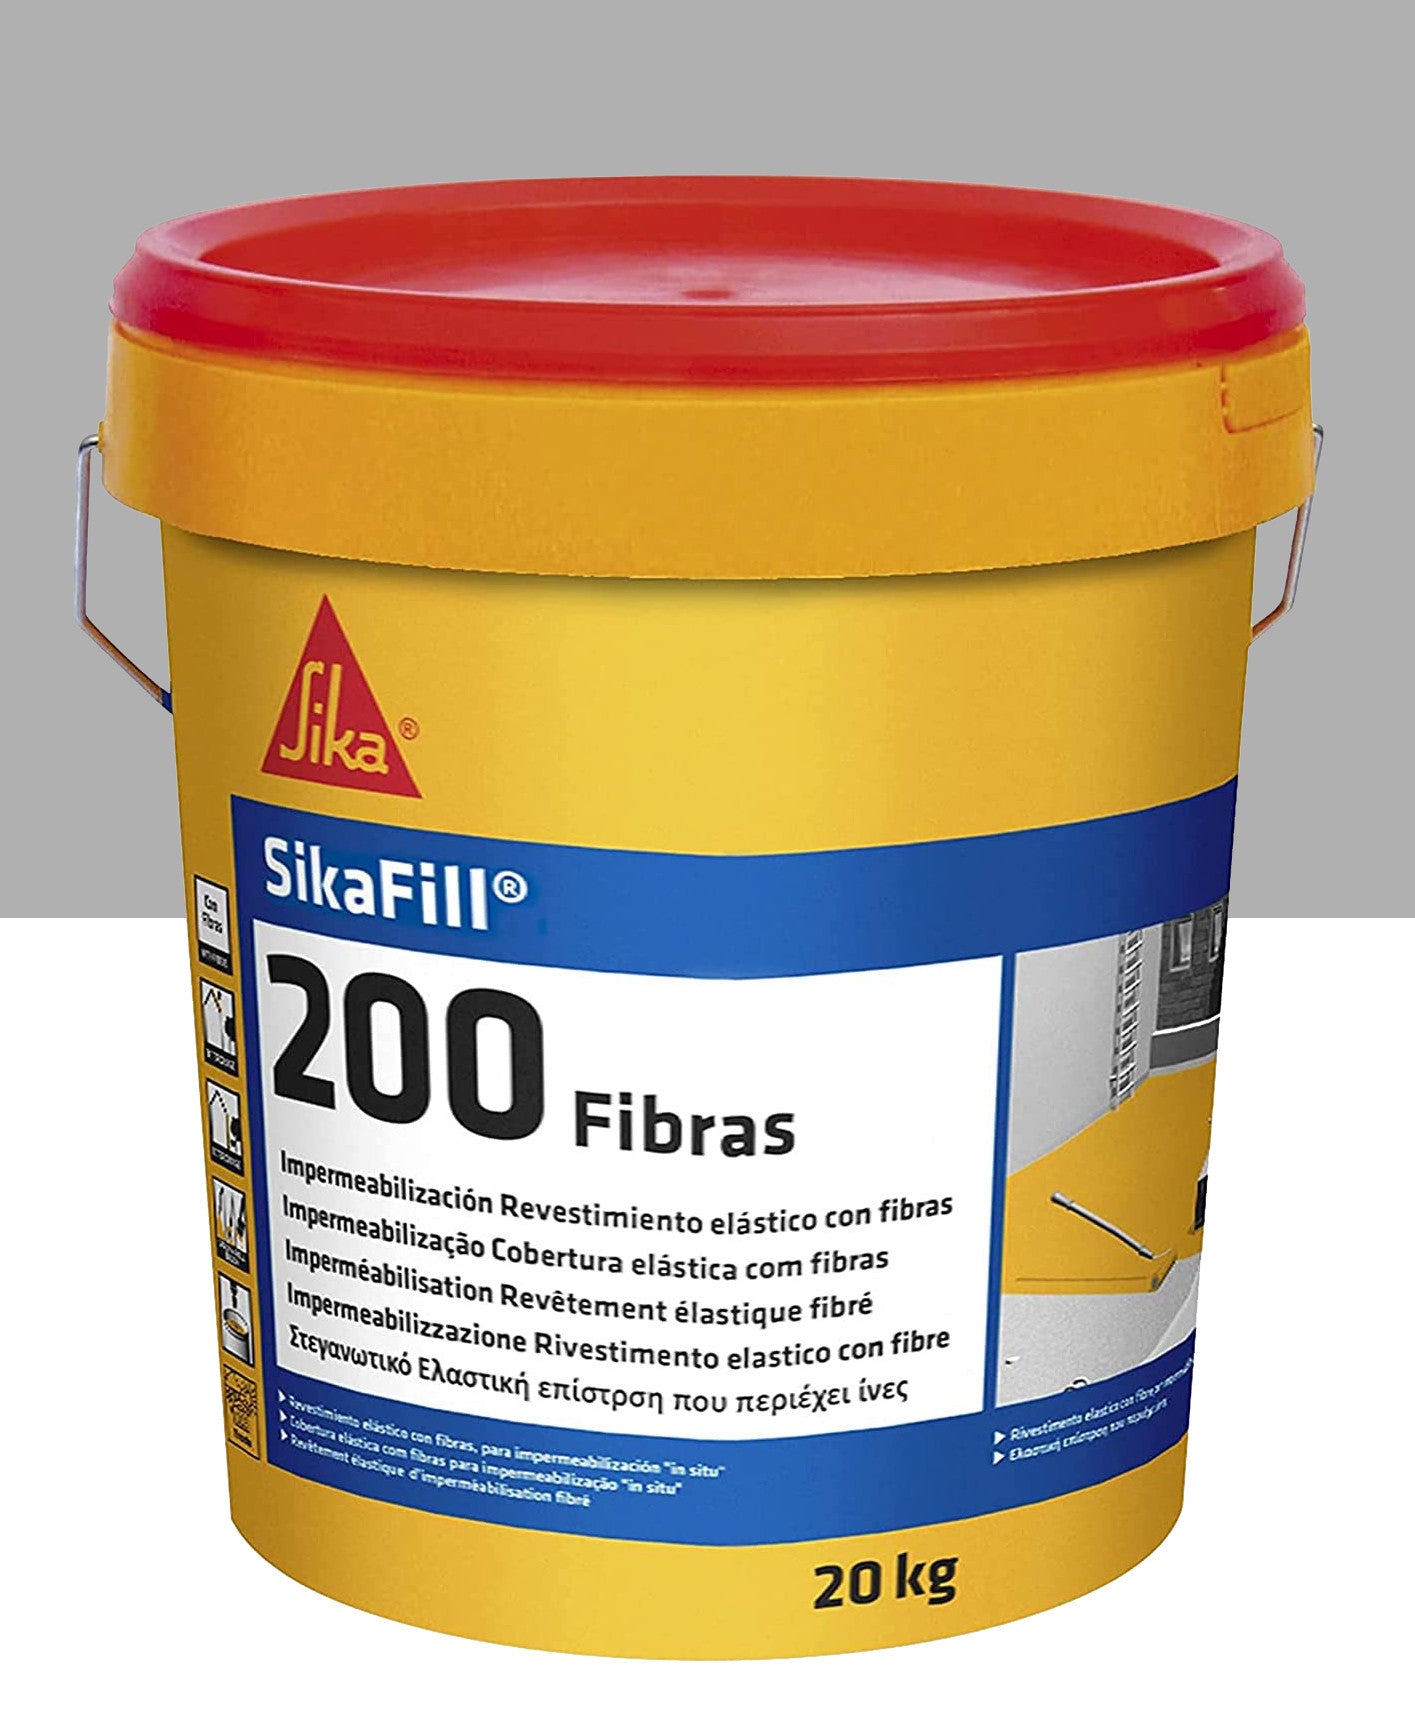 Bote Pintura Impermeable Sikafill-200 Fibras 20kg SIKA - 6